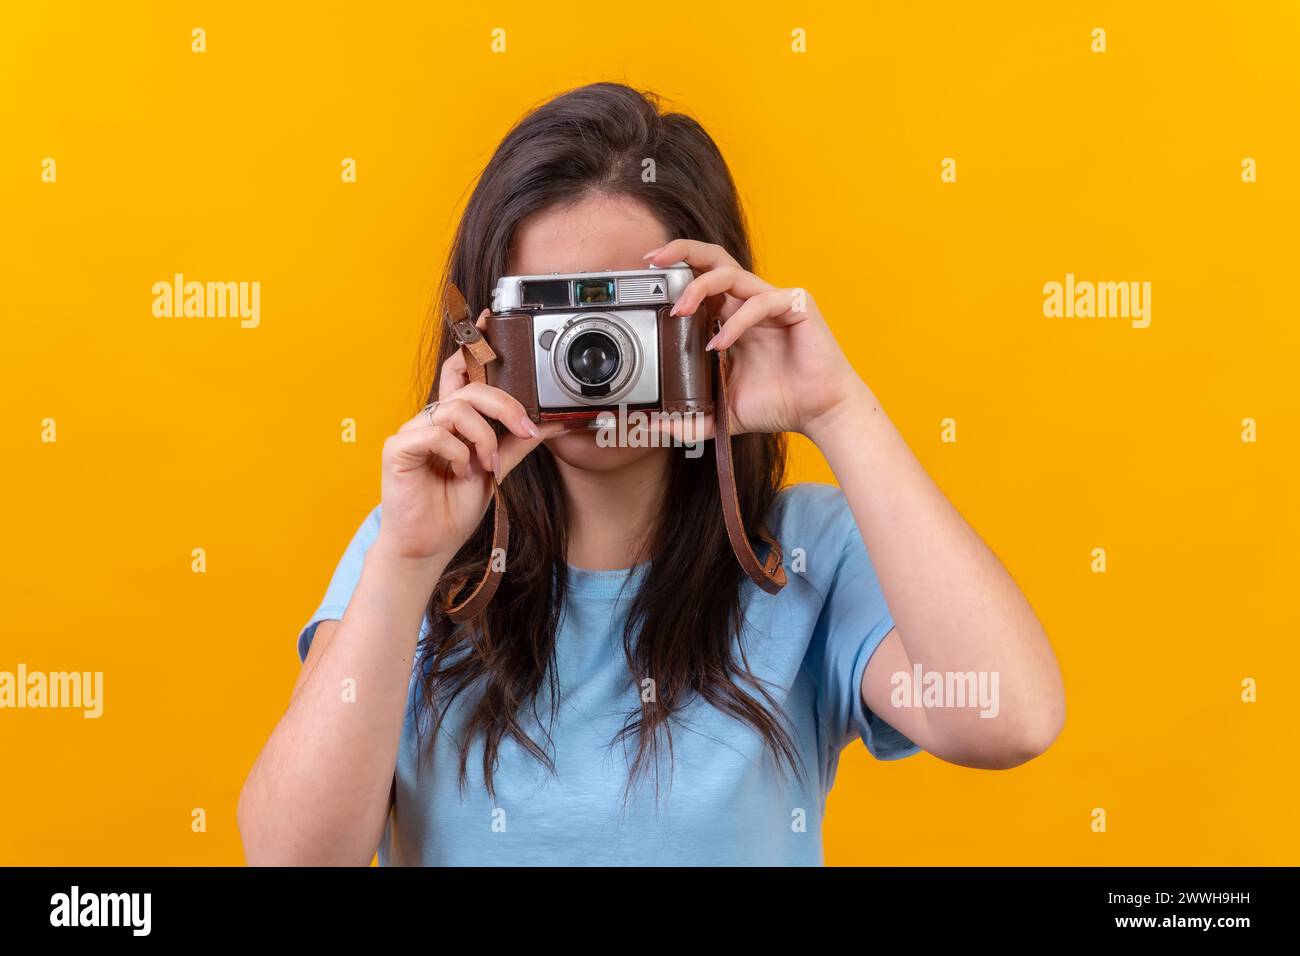 Retrato de estudio con fondo amarillo de una mujer joven casual con una cámara antigua Foto de stock